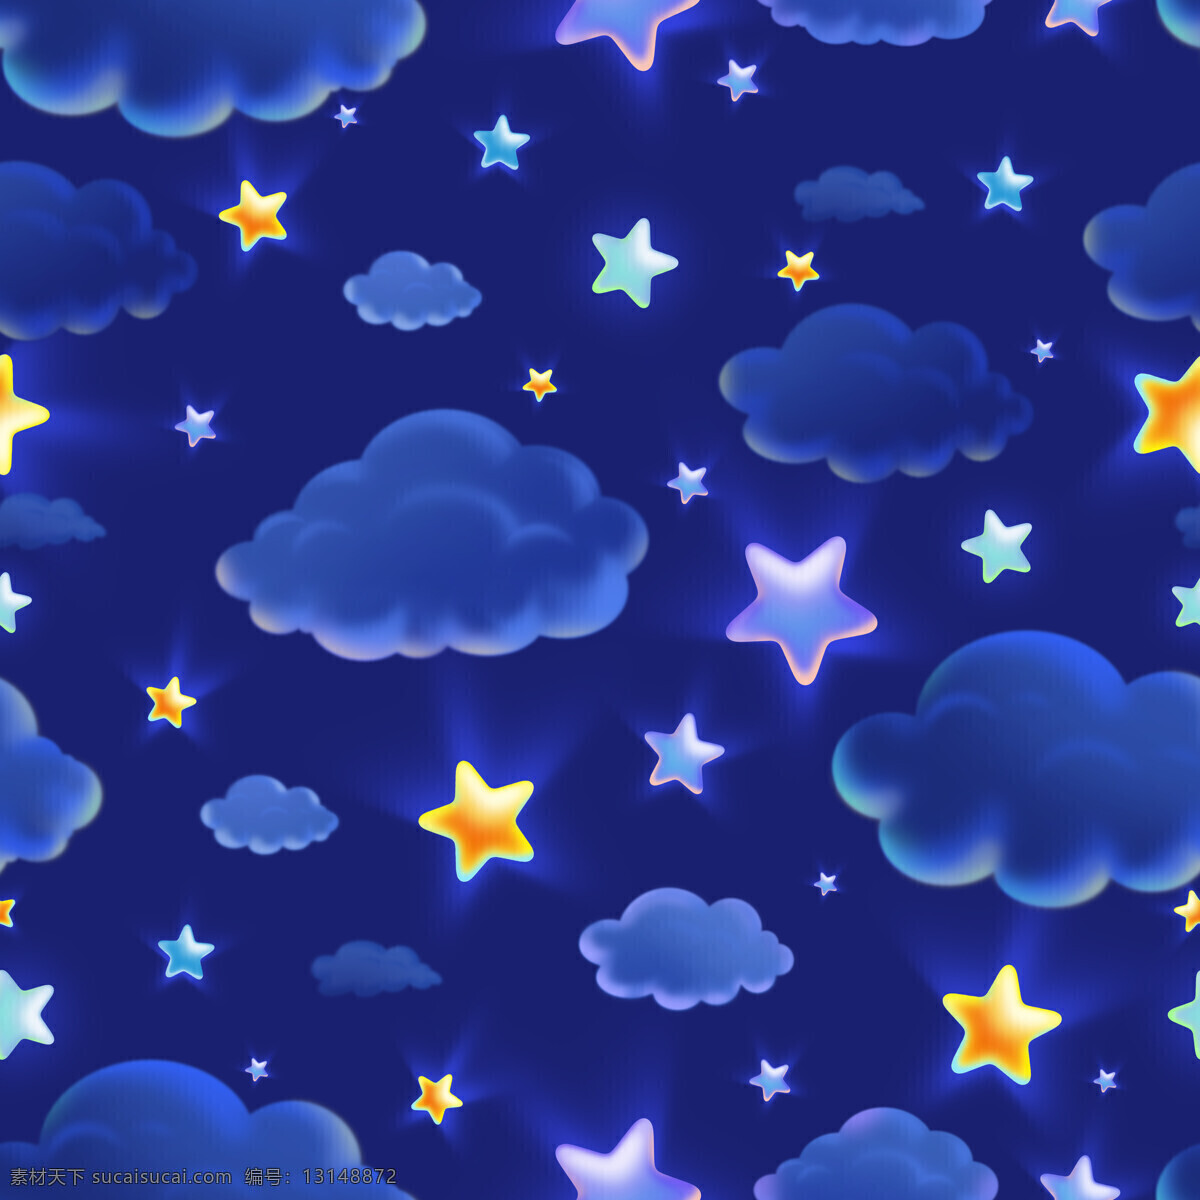 乌云素材 乌云 卡通 云朵 云彩 星星 繁星 星空 夜空 背景素材 贴图素材 高清图片 背景 贴图 背景贴图素材 背景底纹 底纹边框